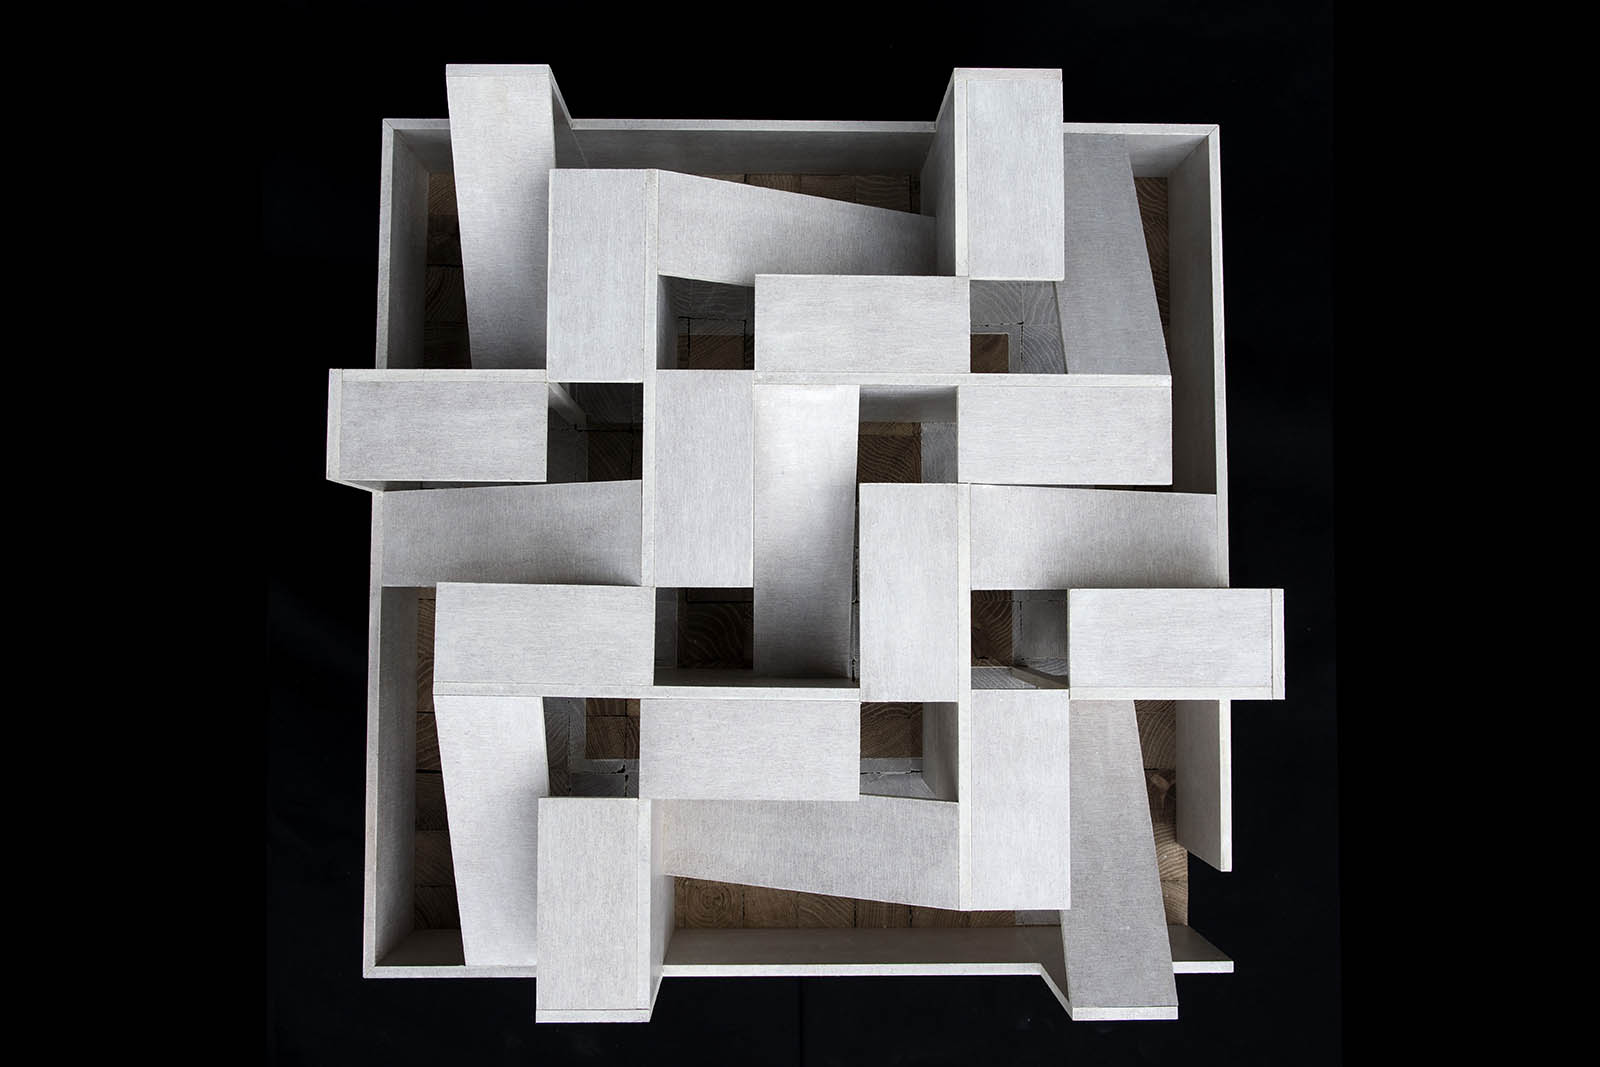 Beate Hølmebakk’s Paper Architecture 7